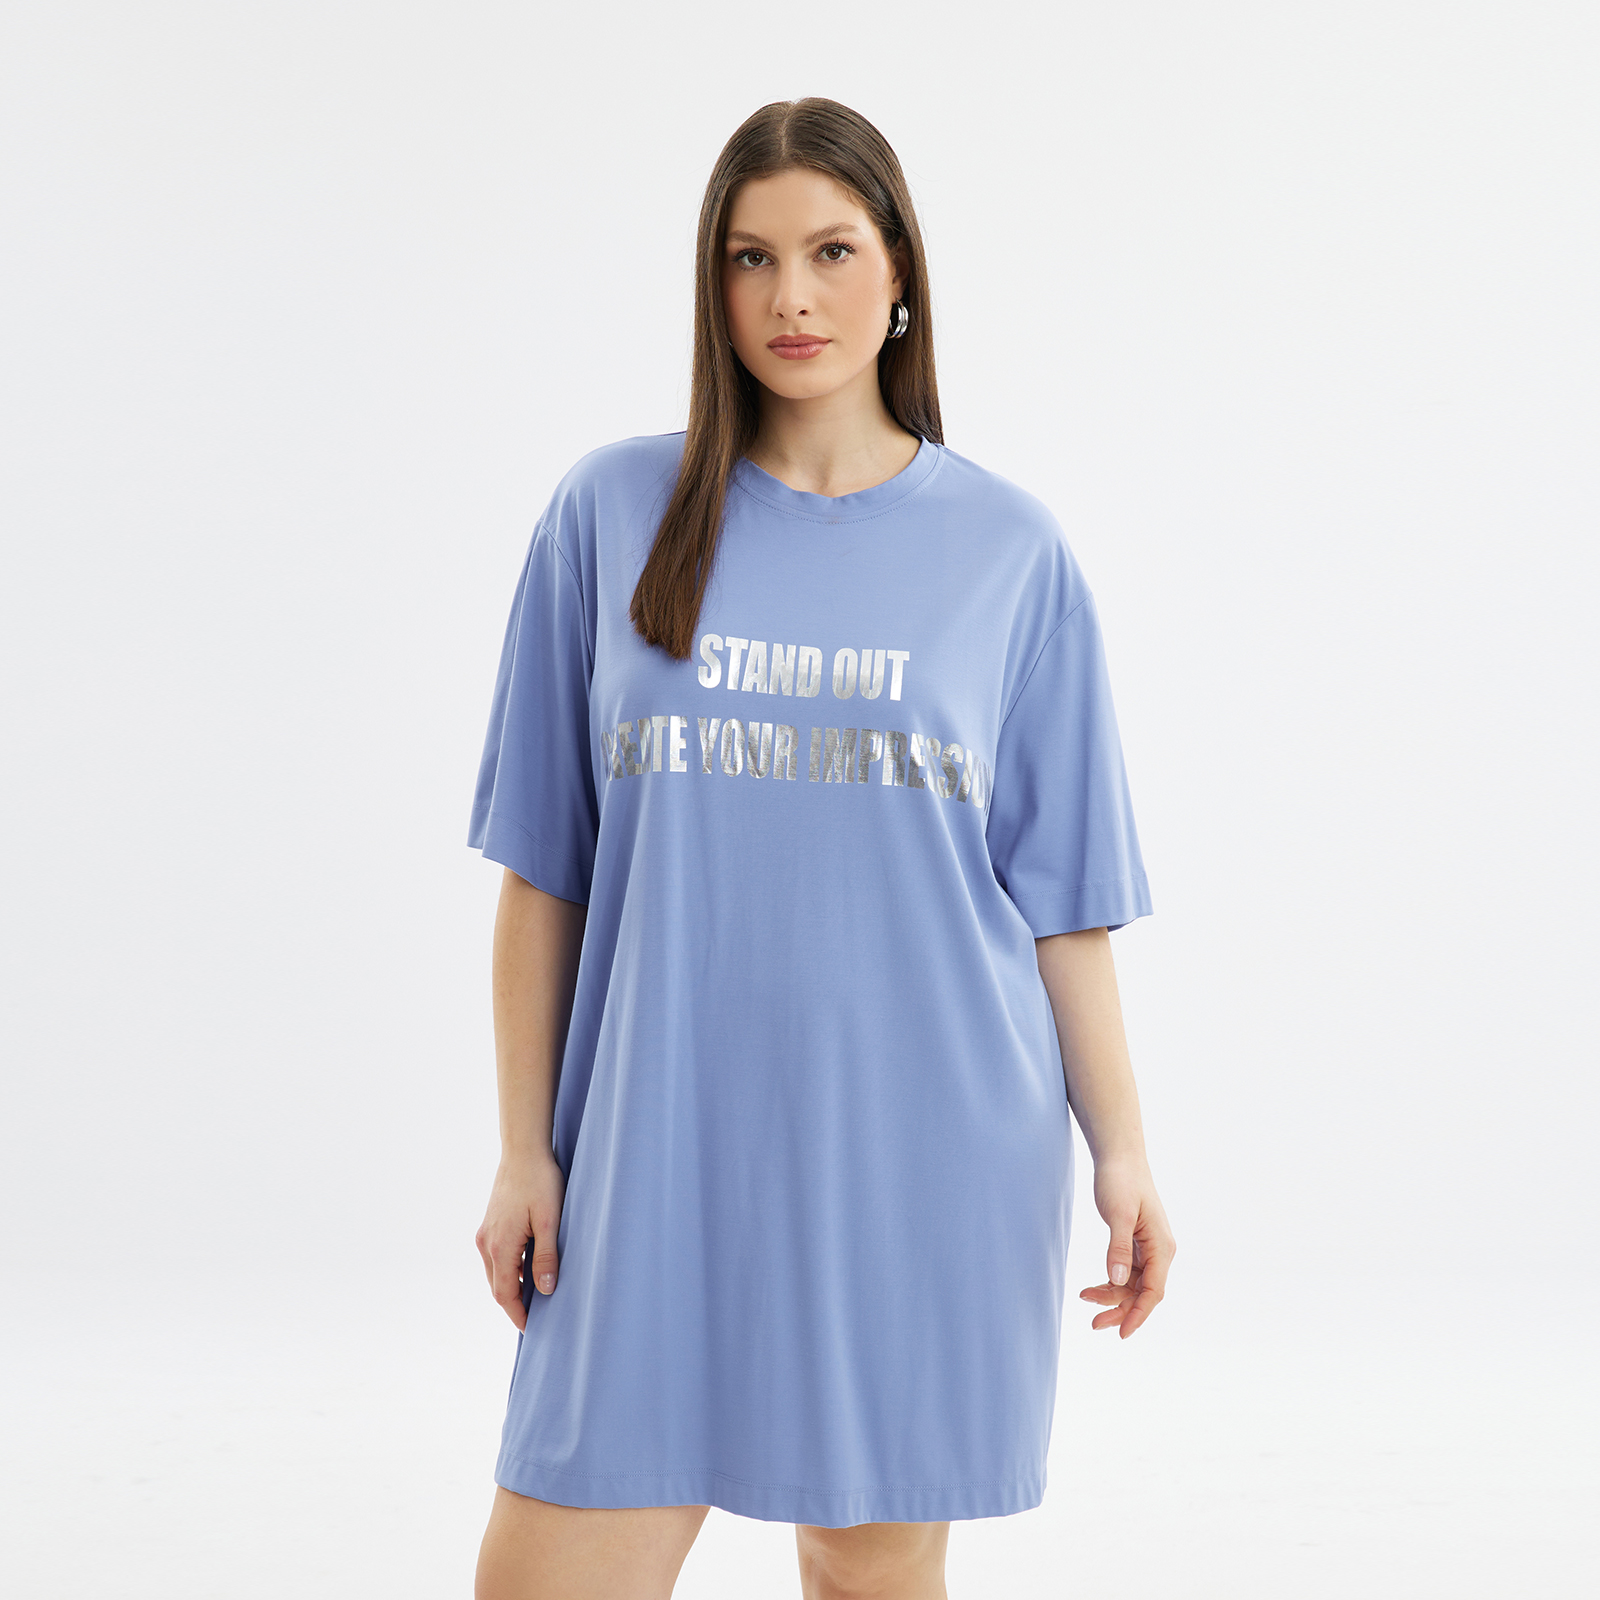 Φόρεμα t-shirt με metallic prints 8101.7191-indigo